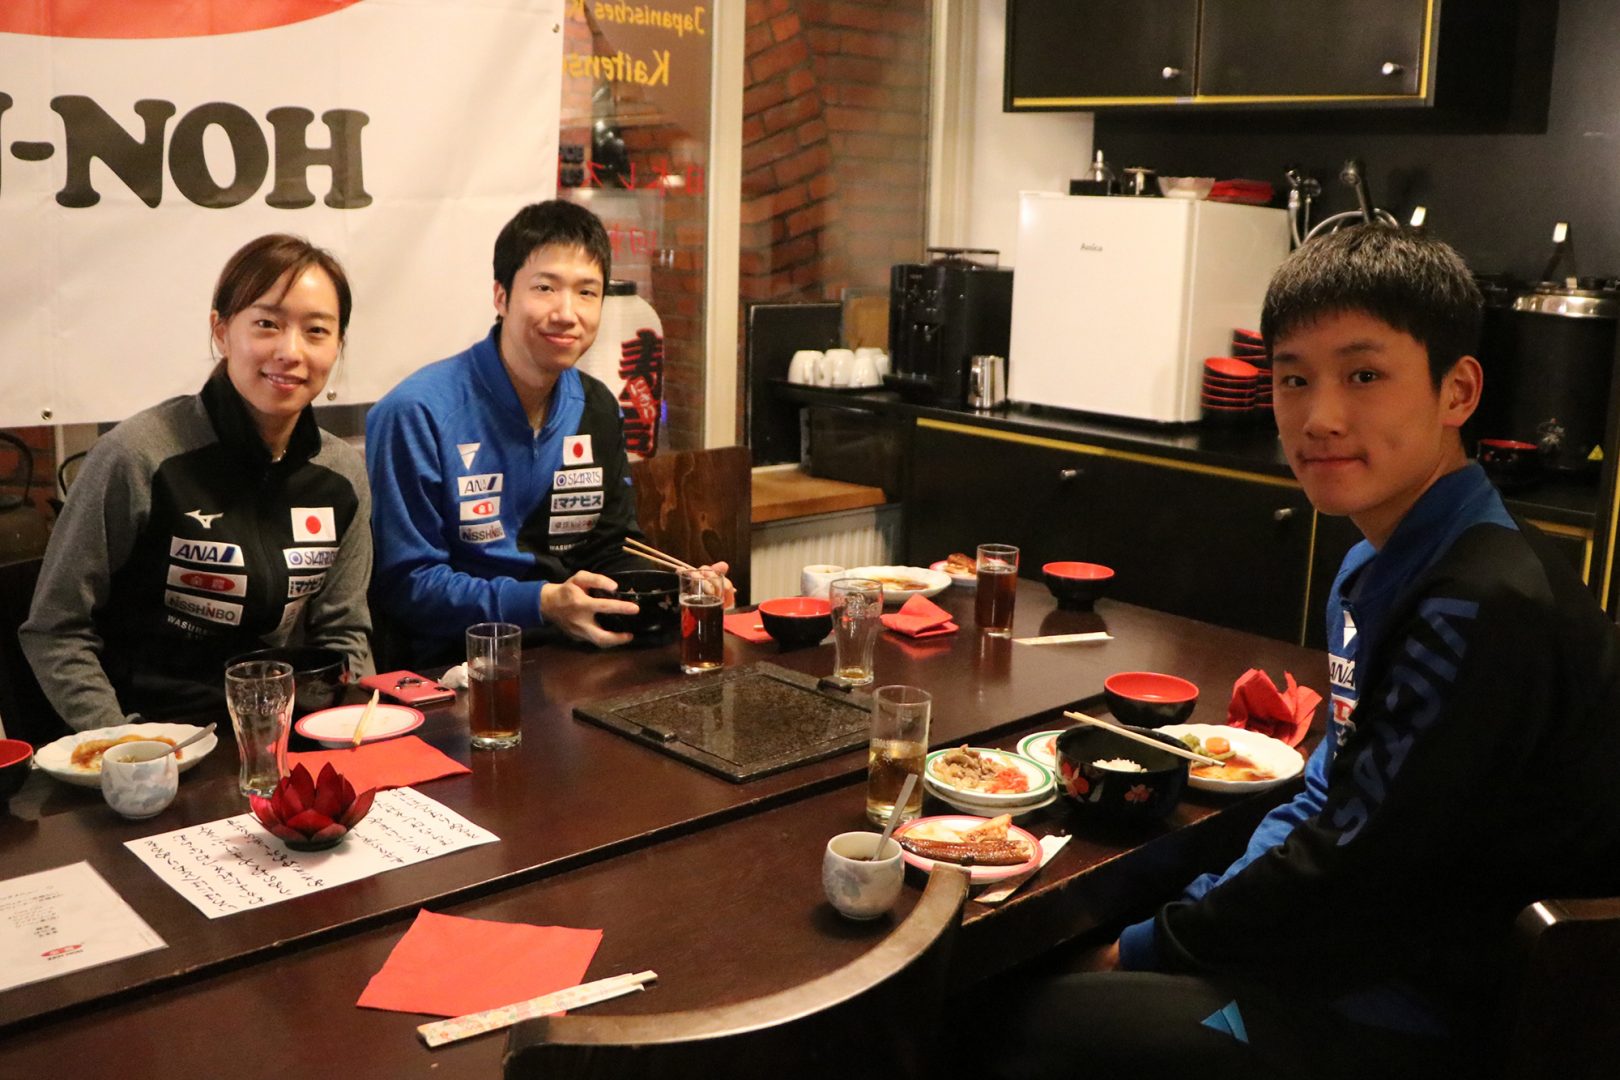 水谷隼「すごくありがたい」　全農、卓球日本選手団を“和食”でサポート